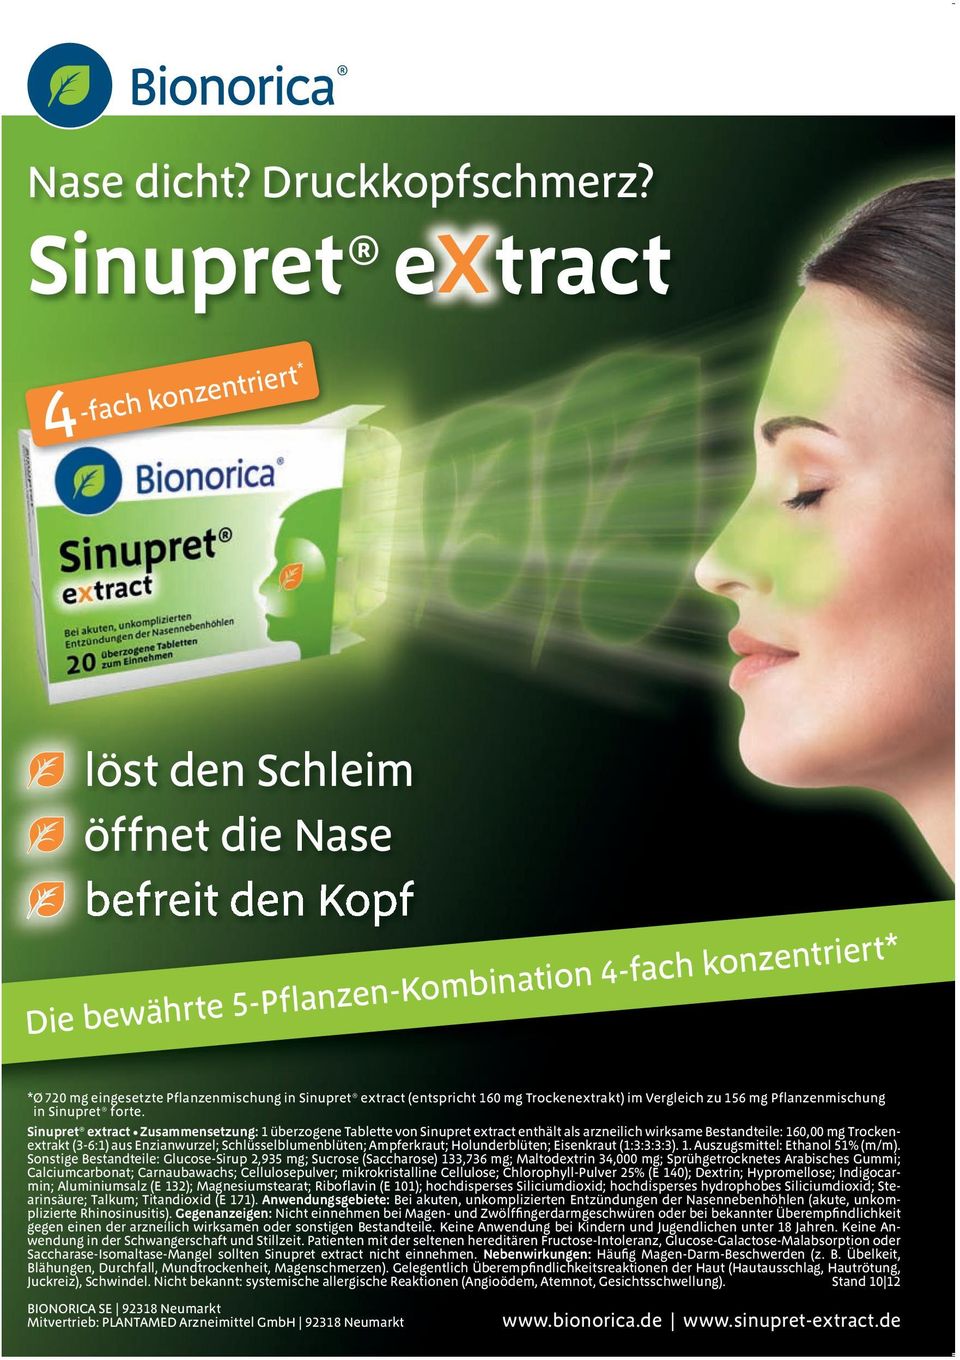 Sinupret extract (entspricht 160 mg Trockenextrakt) im Vergleich zu 156 mg Pflanzenmischung in Sinupret forte.